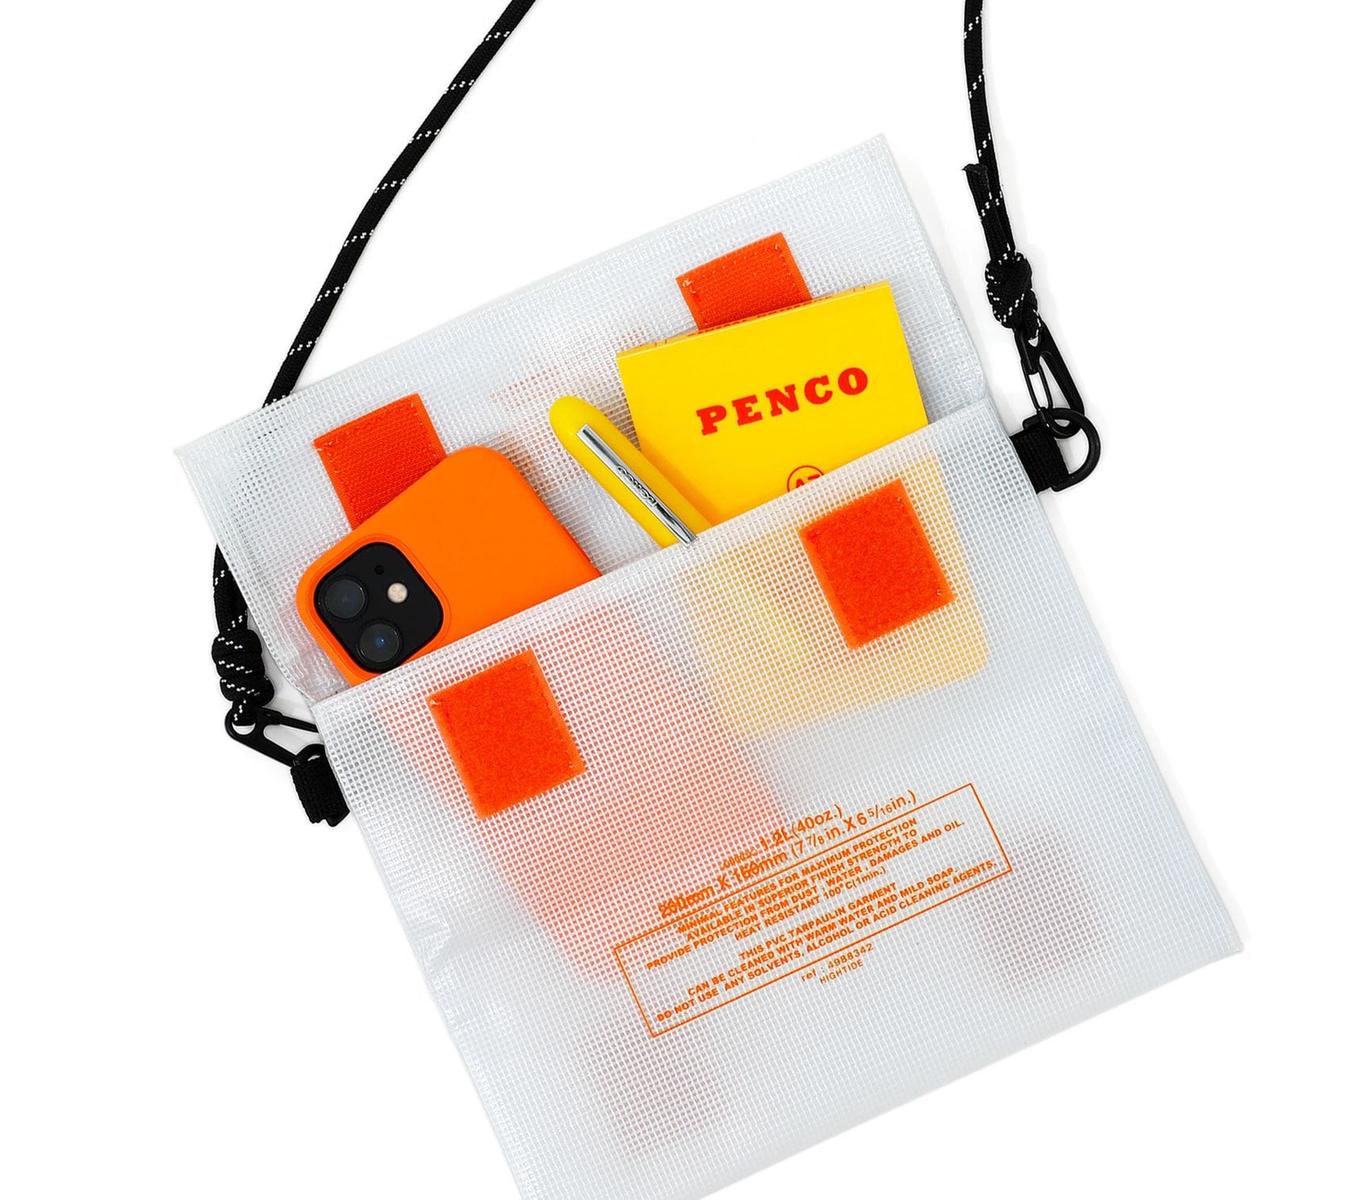 Copy of Multipurpose Carry Case - Tite Penco medium